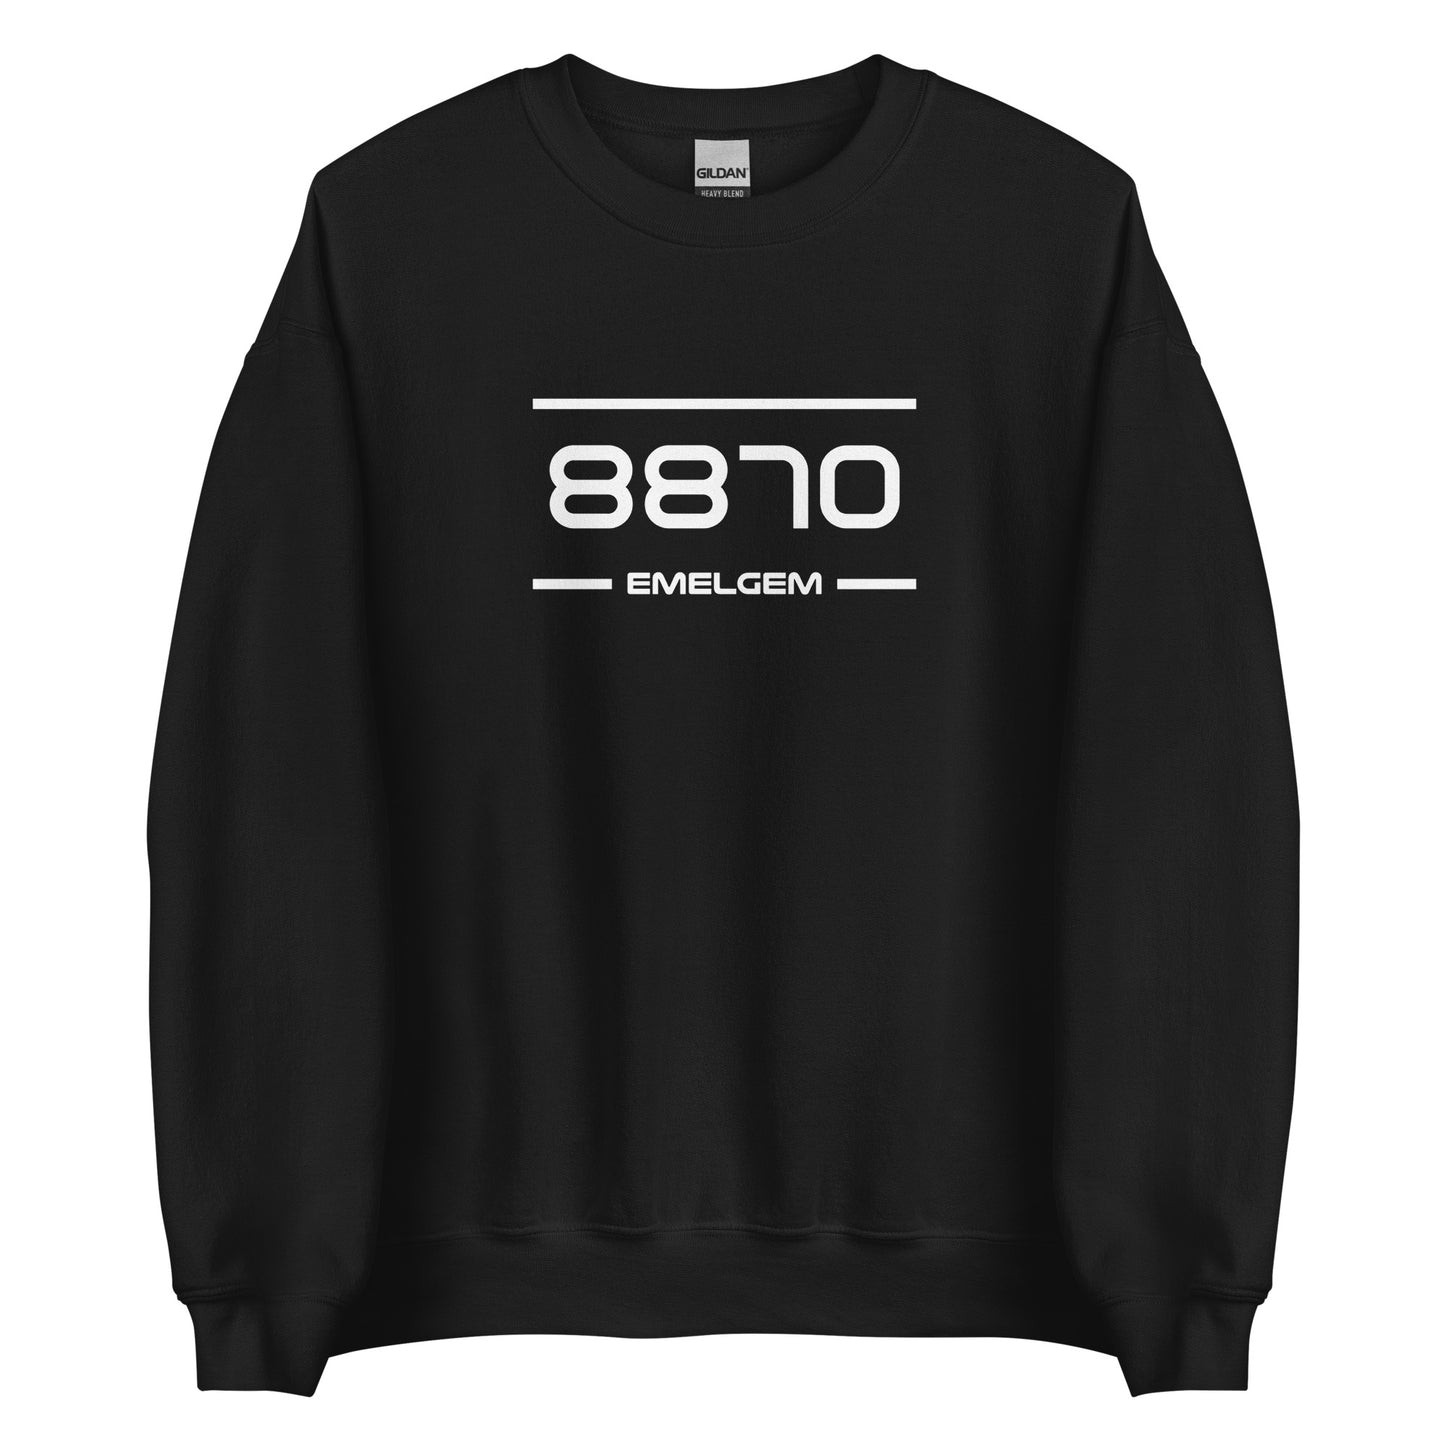 Sweater - 8870 - Emelgem (M/V)